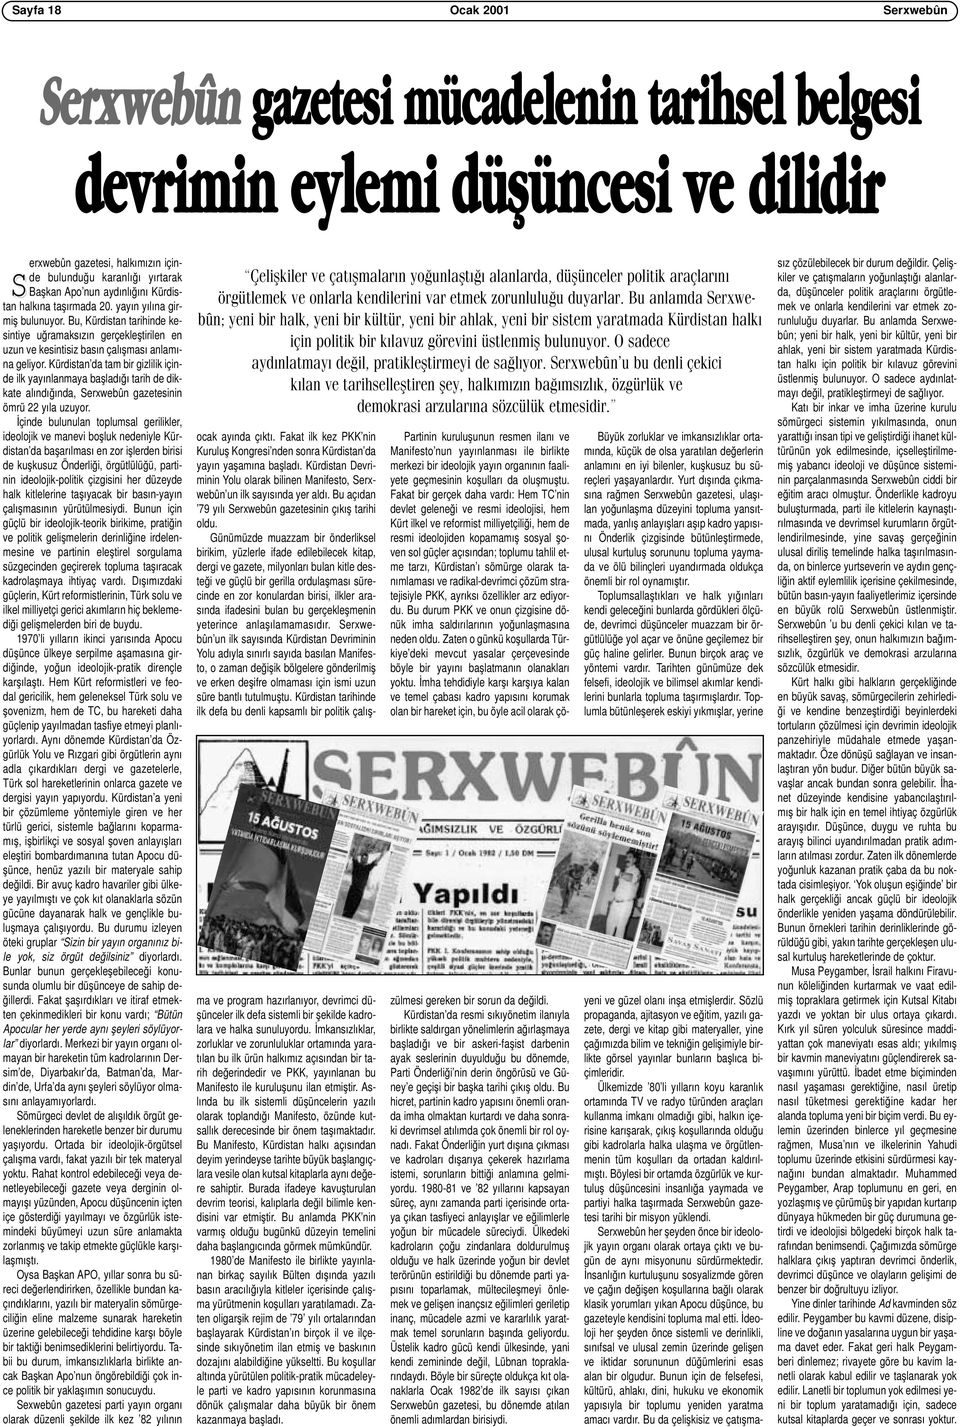 Kürdistan da tam bir gizlilik içinde ilk yayınlanmaya başladığı tarih de dikkate alındığında, Serxwebûn gazetesinin ömrü 22 yıla uzuyor.